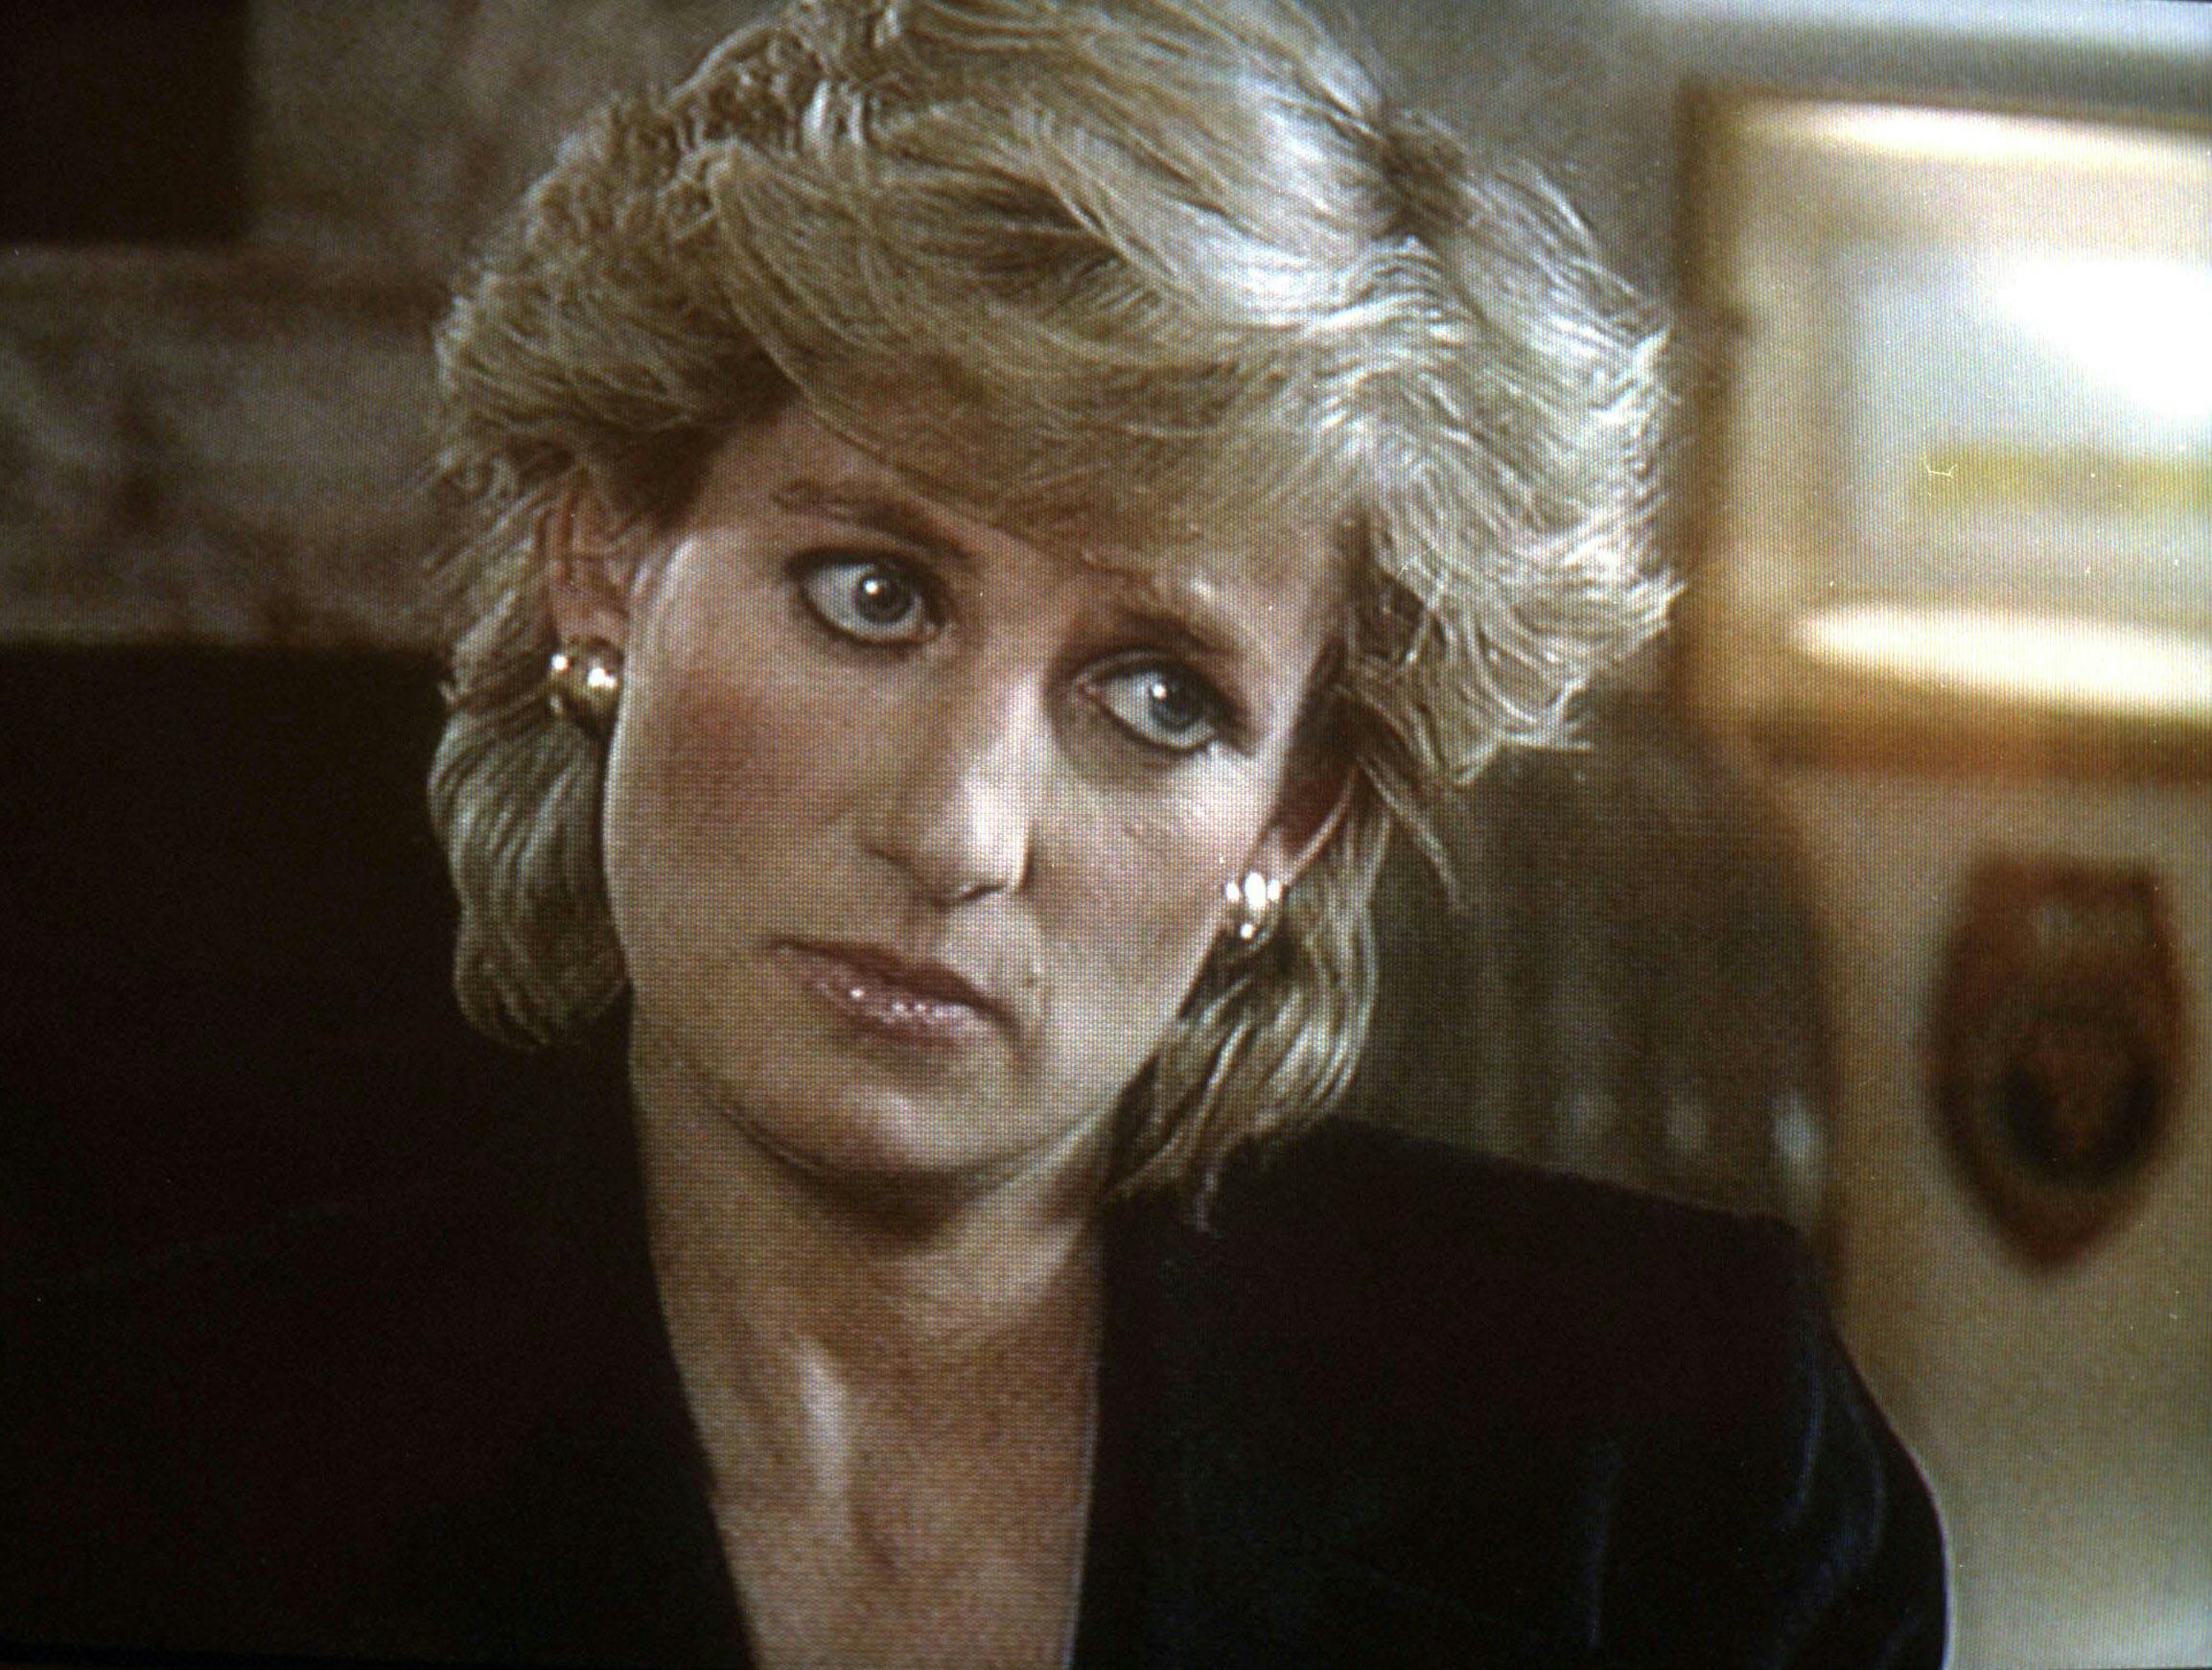 Under det berømte interview med Martin Bashir indrømmede Diana, at de havde været "tre i ægteskabet". Den tredje person var Camilla Parker Bowles.
